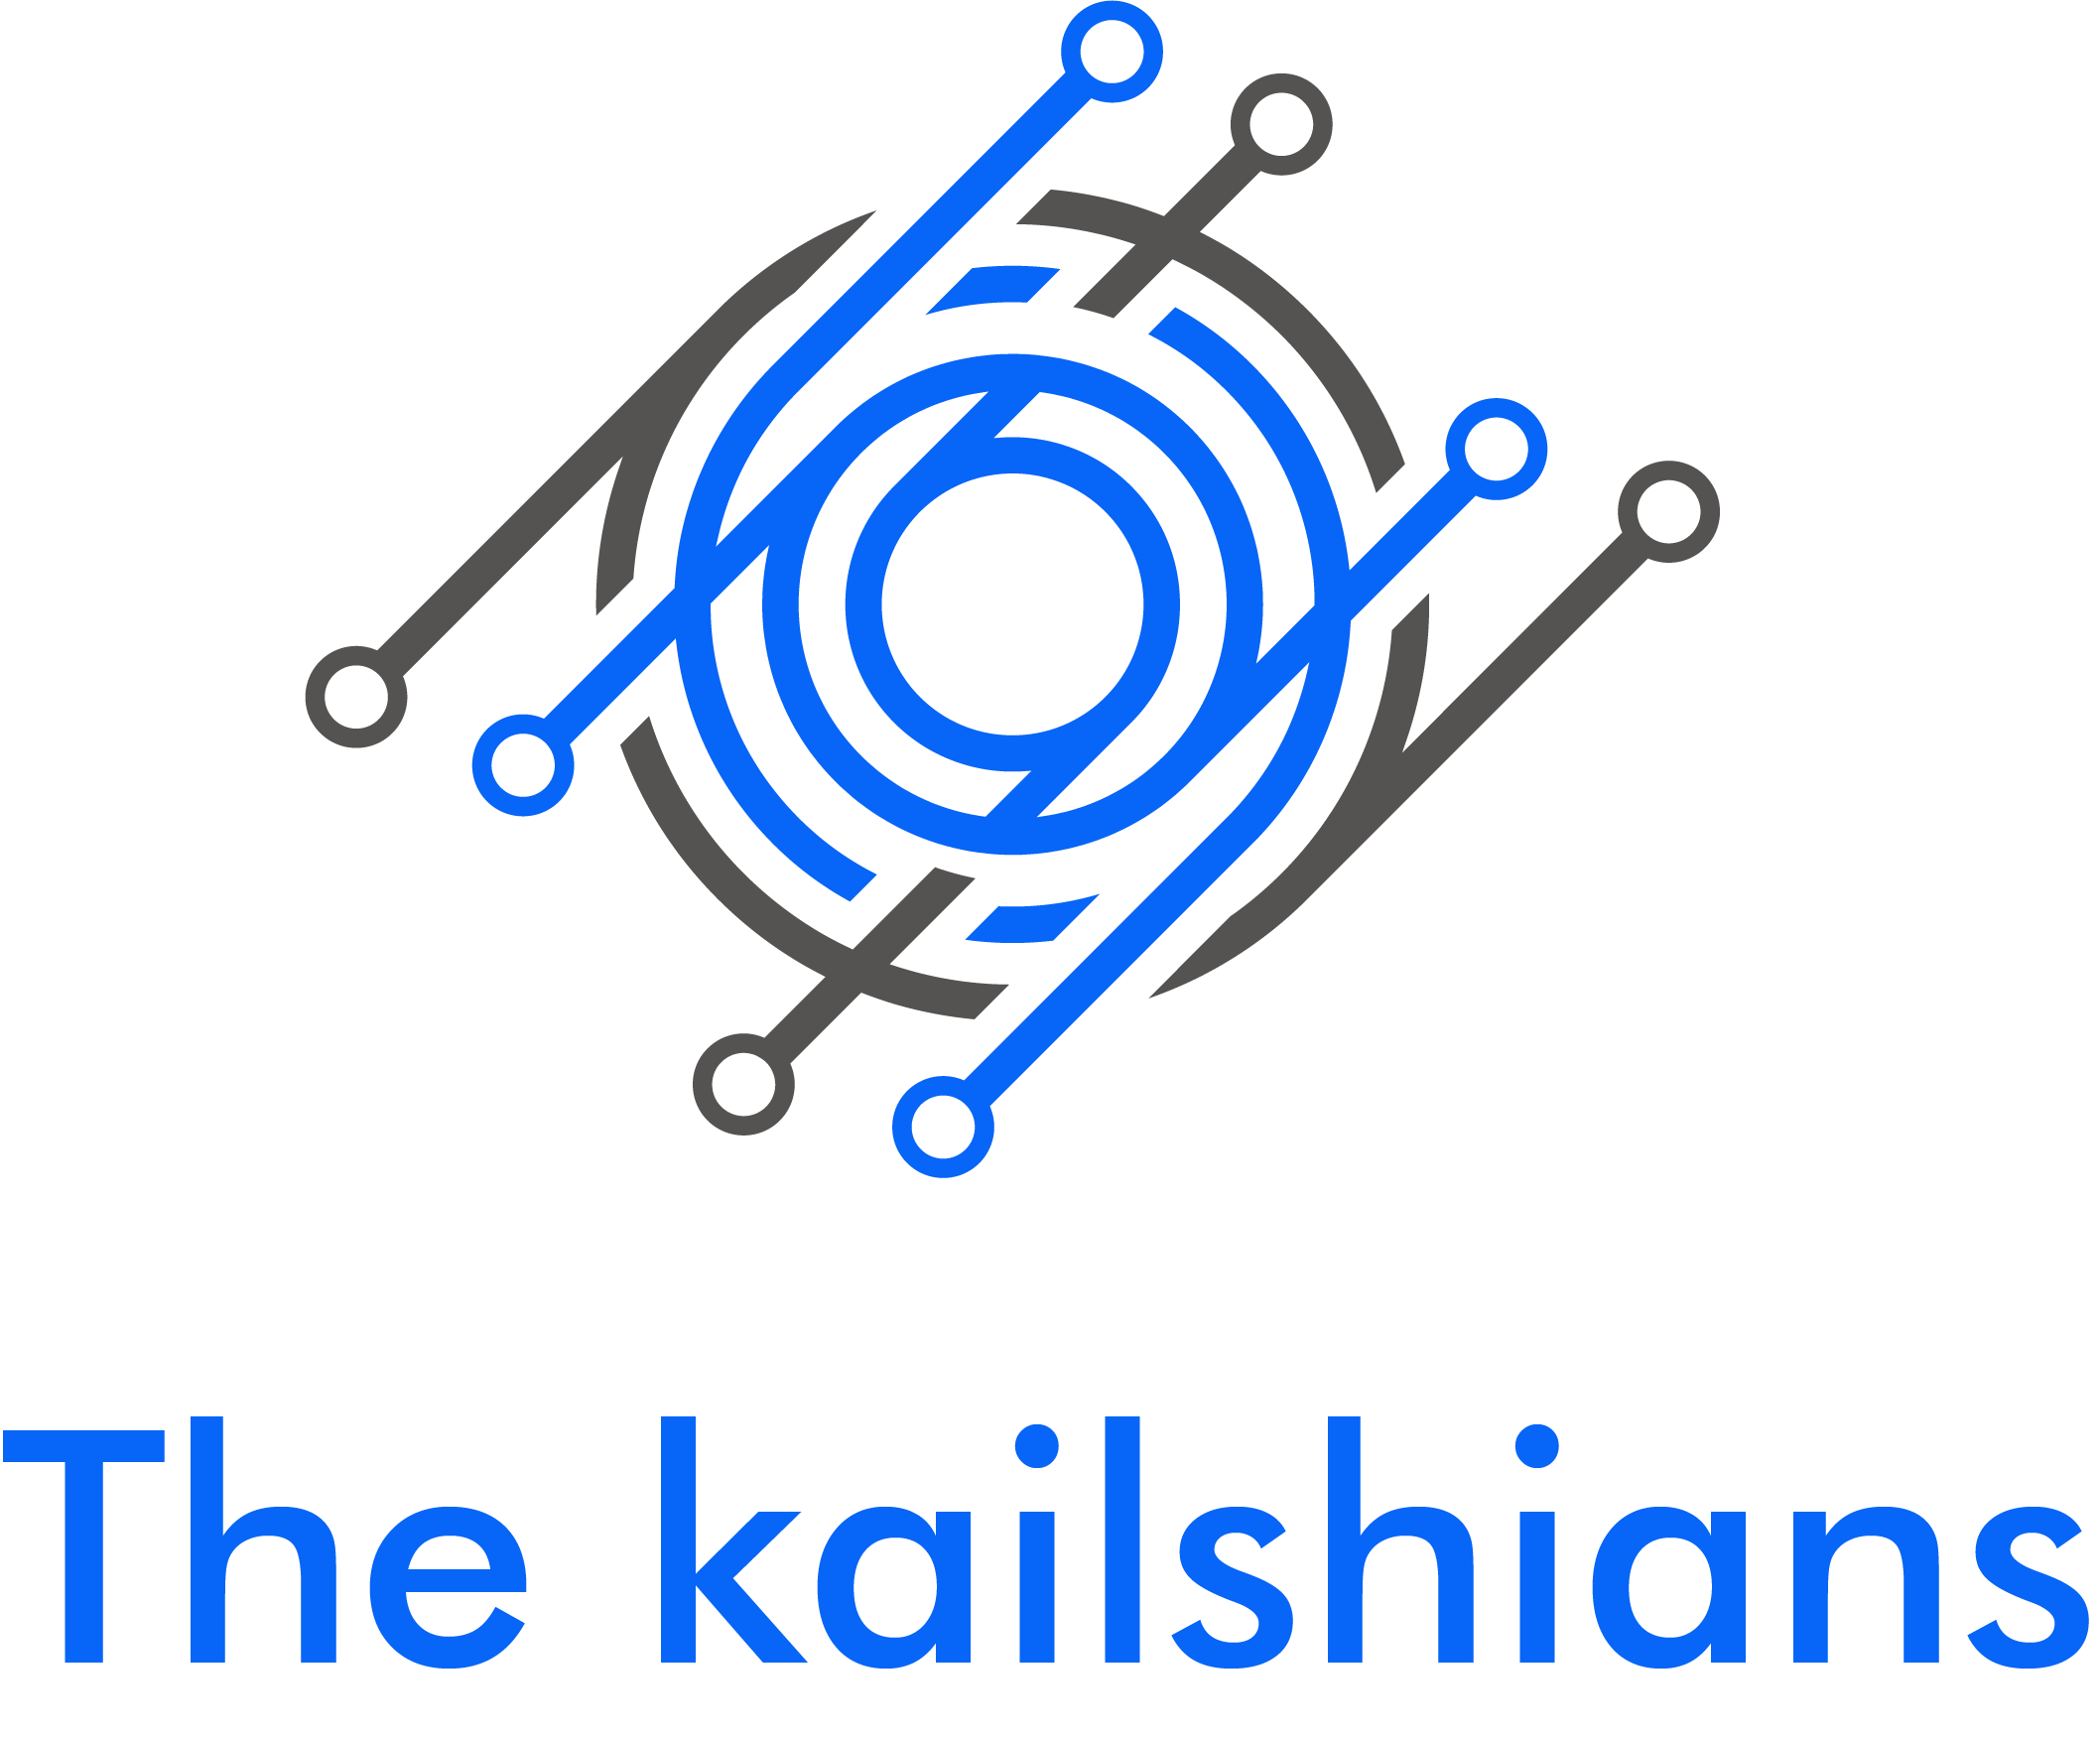 Kailshians logo